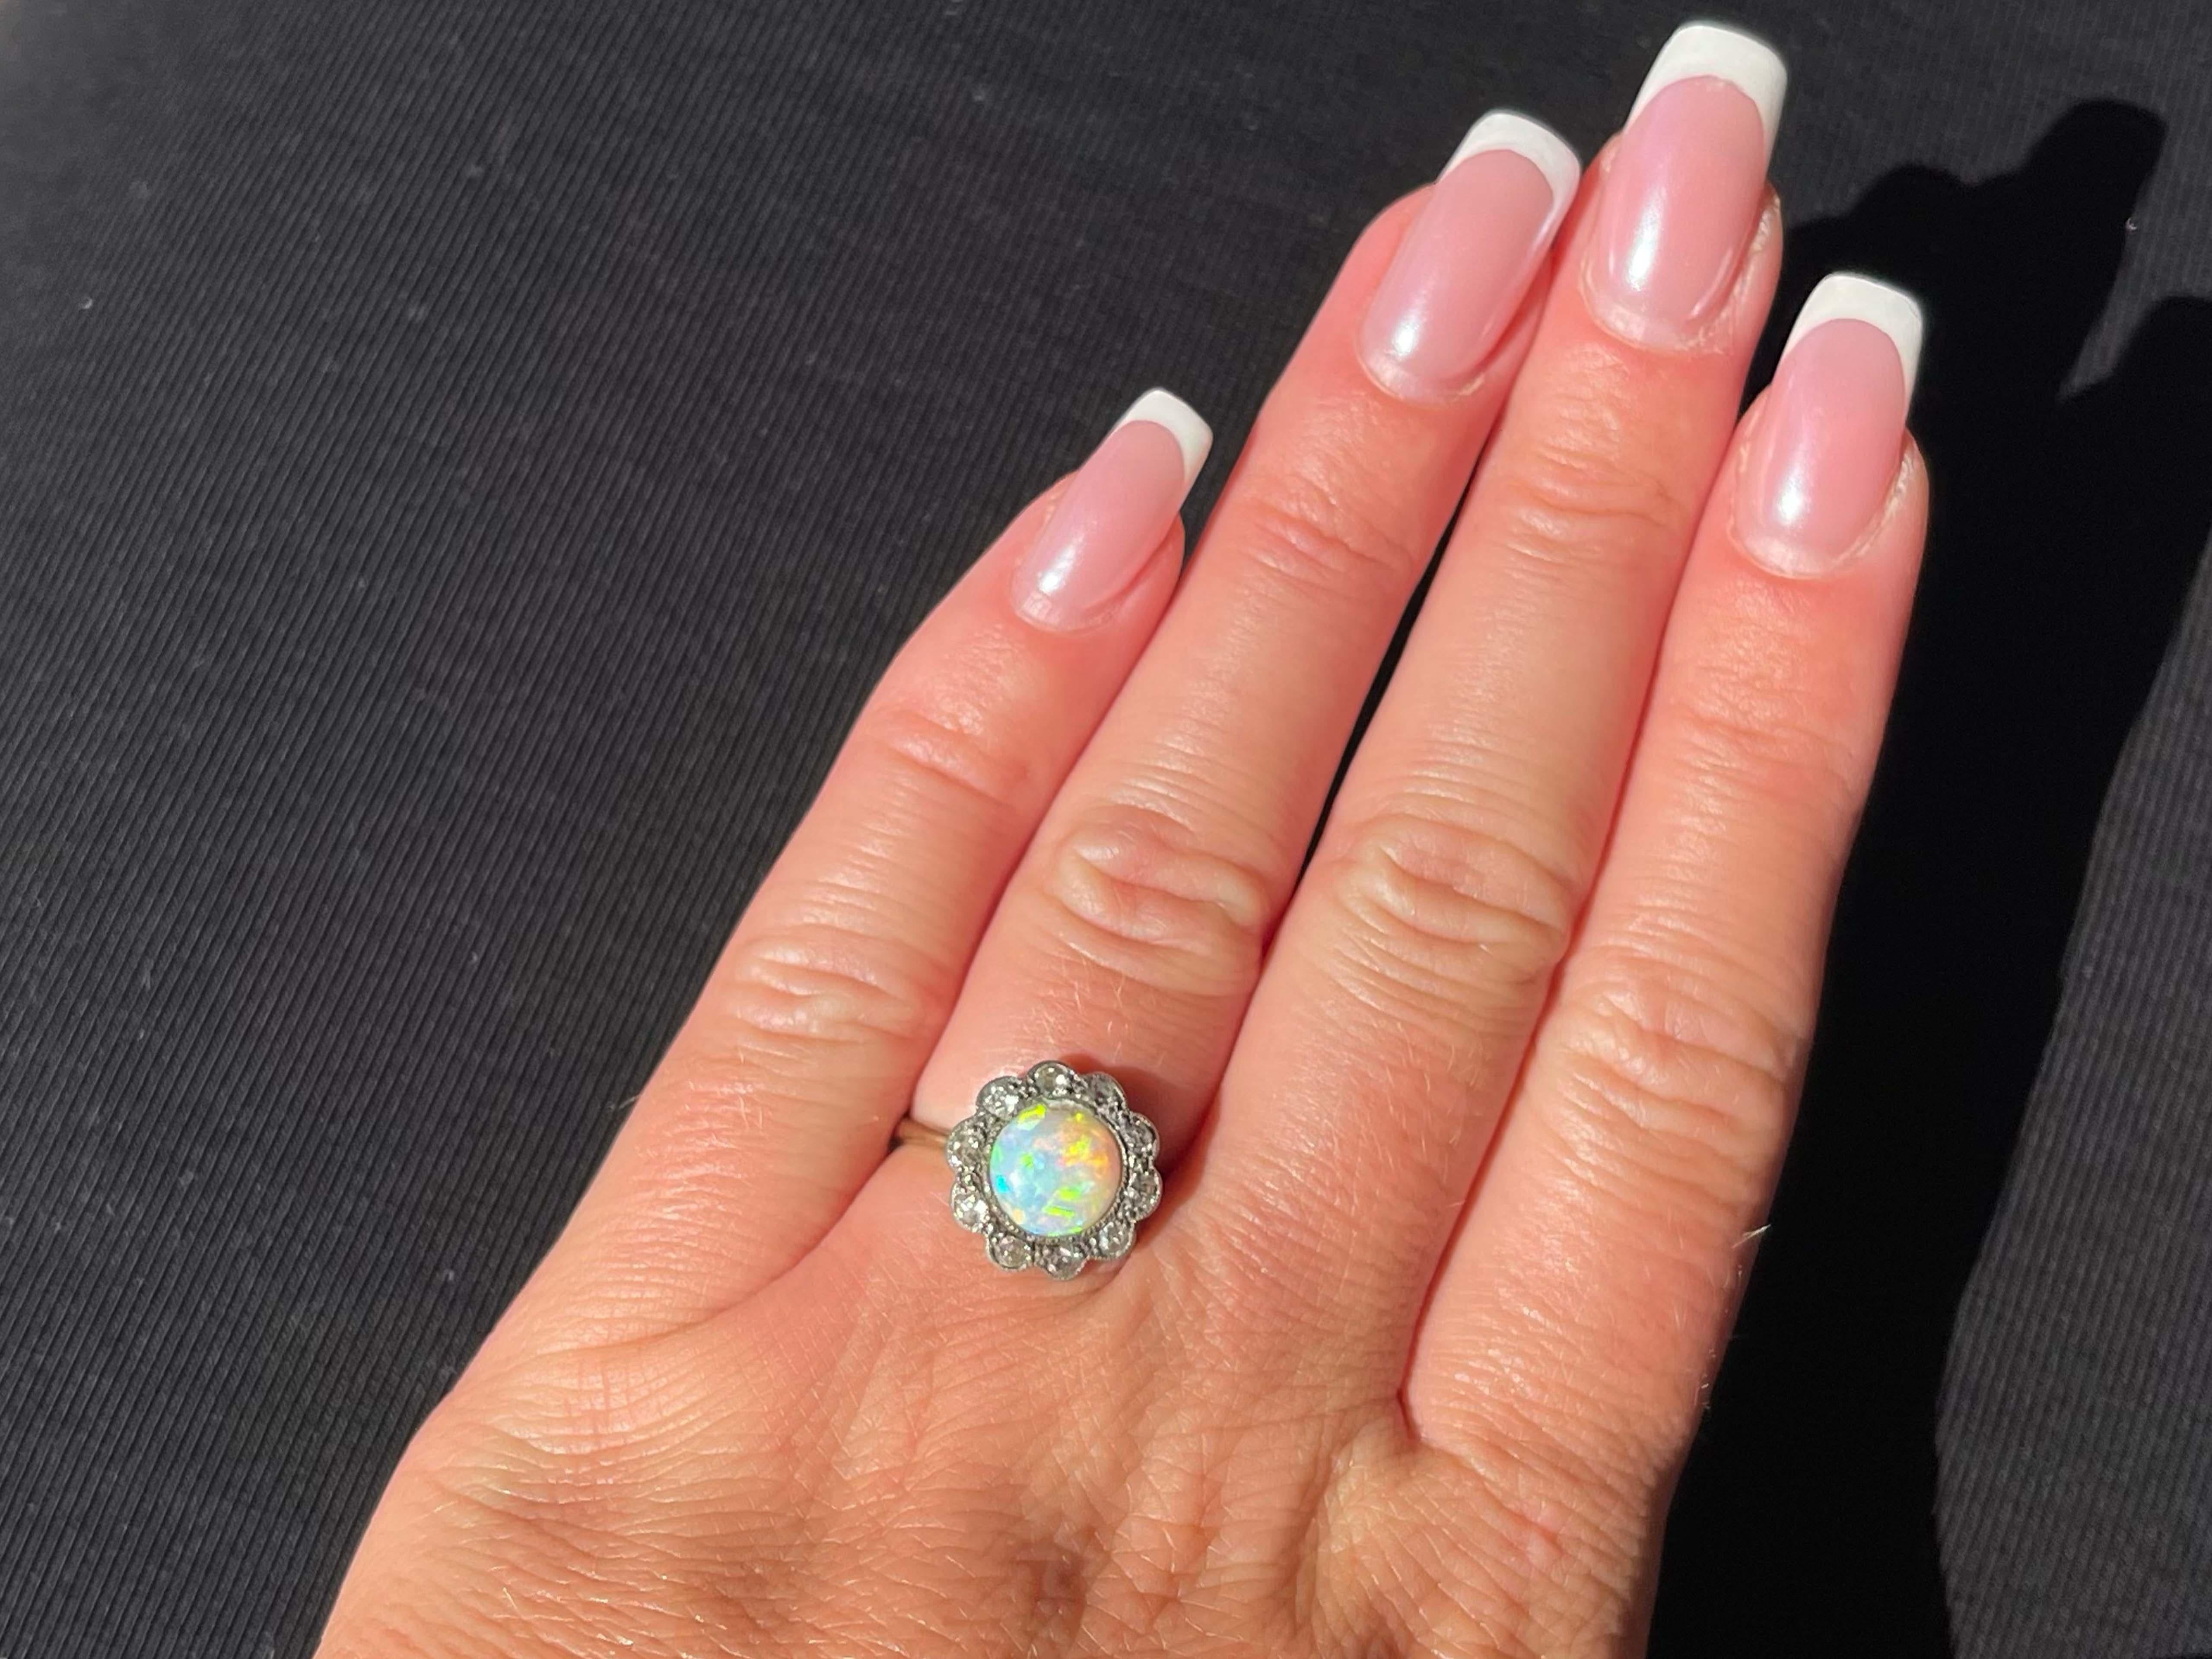 Dieser antike Ring wurde Anfang der 1900er Jahre hergestellt und ist schätzungsweise über 100 Jahre alt. Es handelt sich um einen atemberaubenden Opal mit schönen gelb-orangen und blauen Farbtönen. Um den Opal herum sind 10 Diamanten im alten